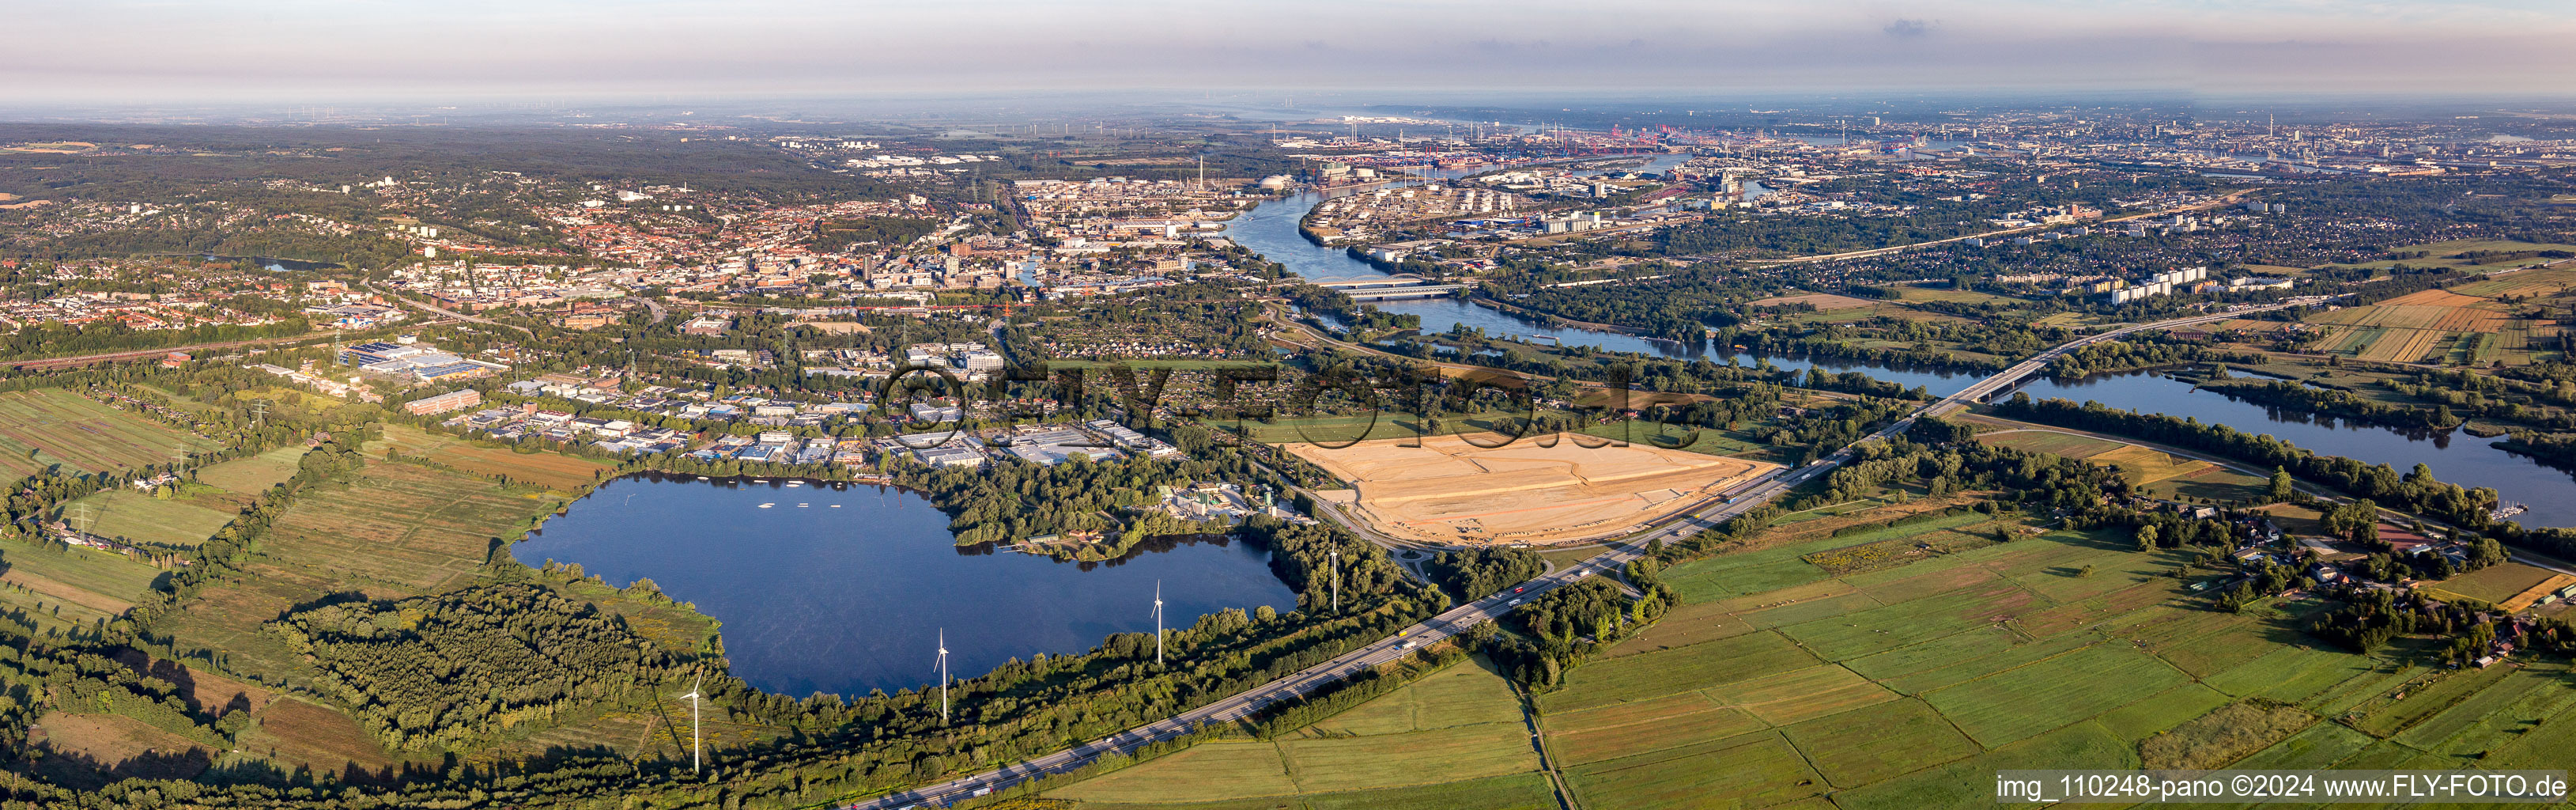 Vue aérienne de Panorama des rives de la Süderelbe dans le quartier de Harburg à Hamburg dans le département Hambourg, Allemagne